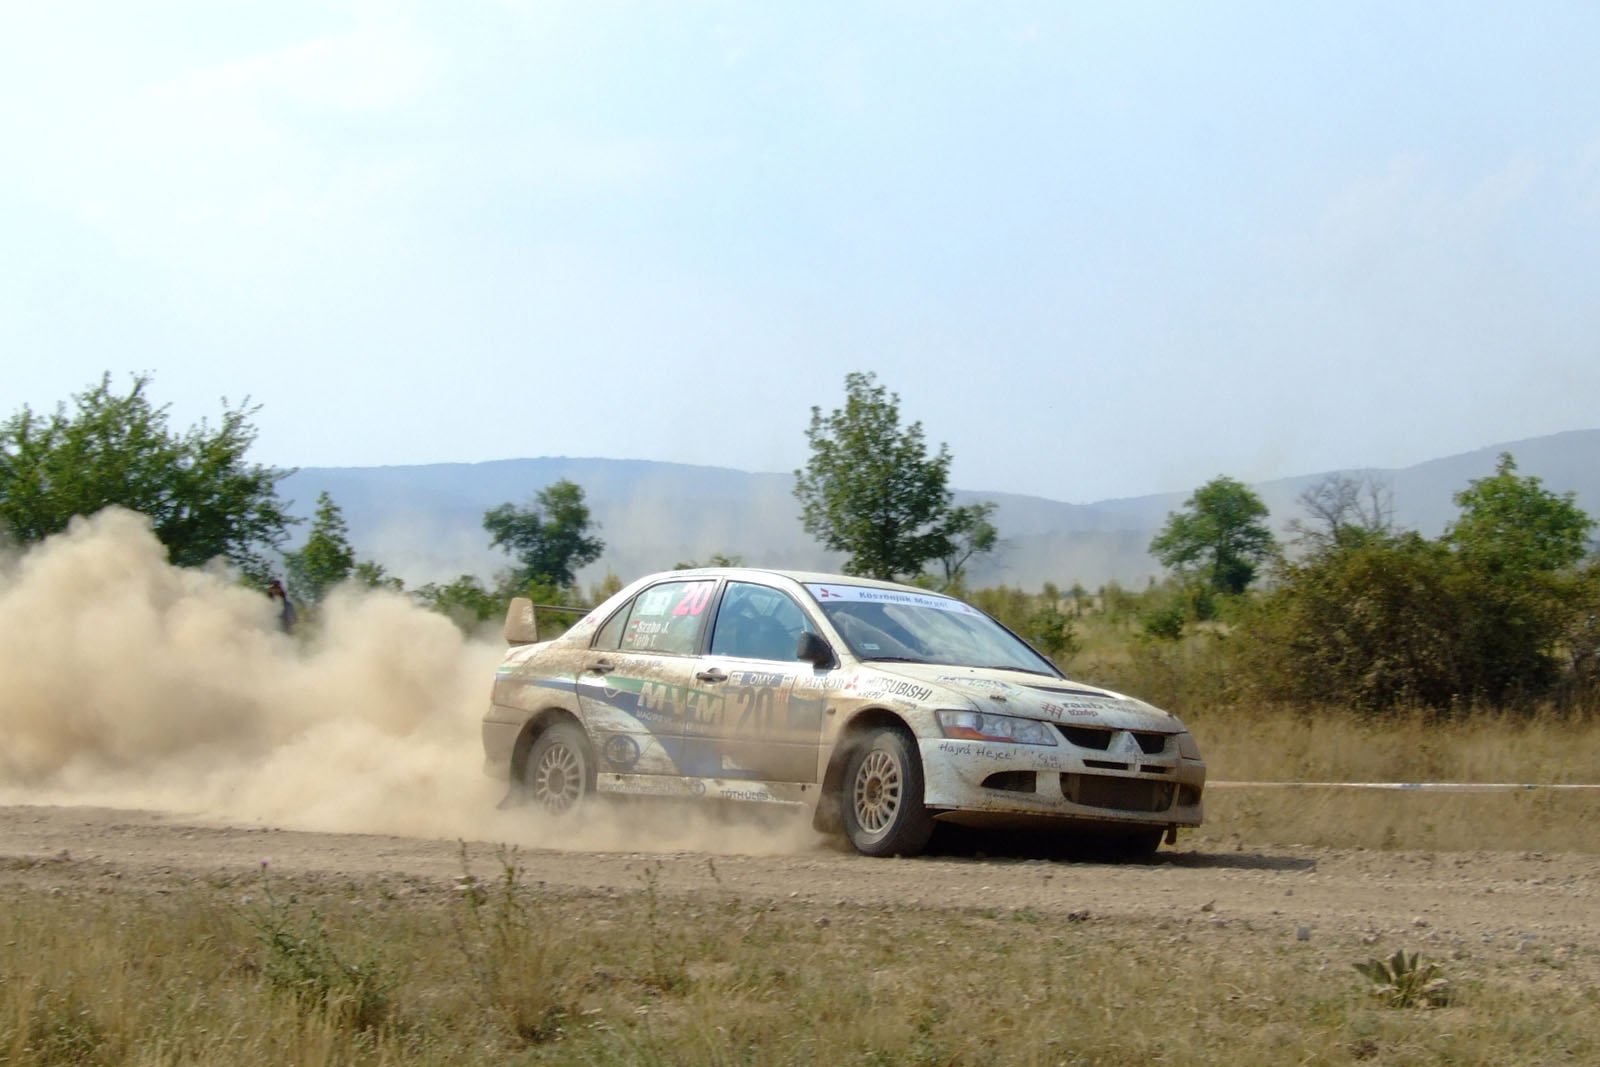 Veszprém Rally 2006 (DSCF4537)